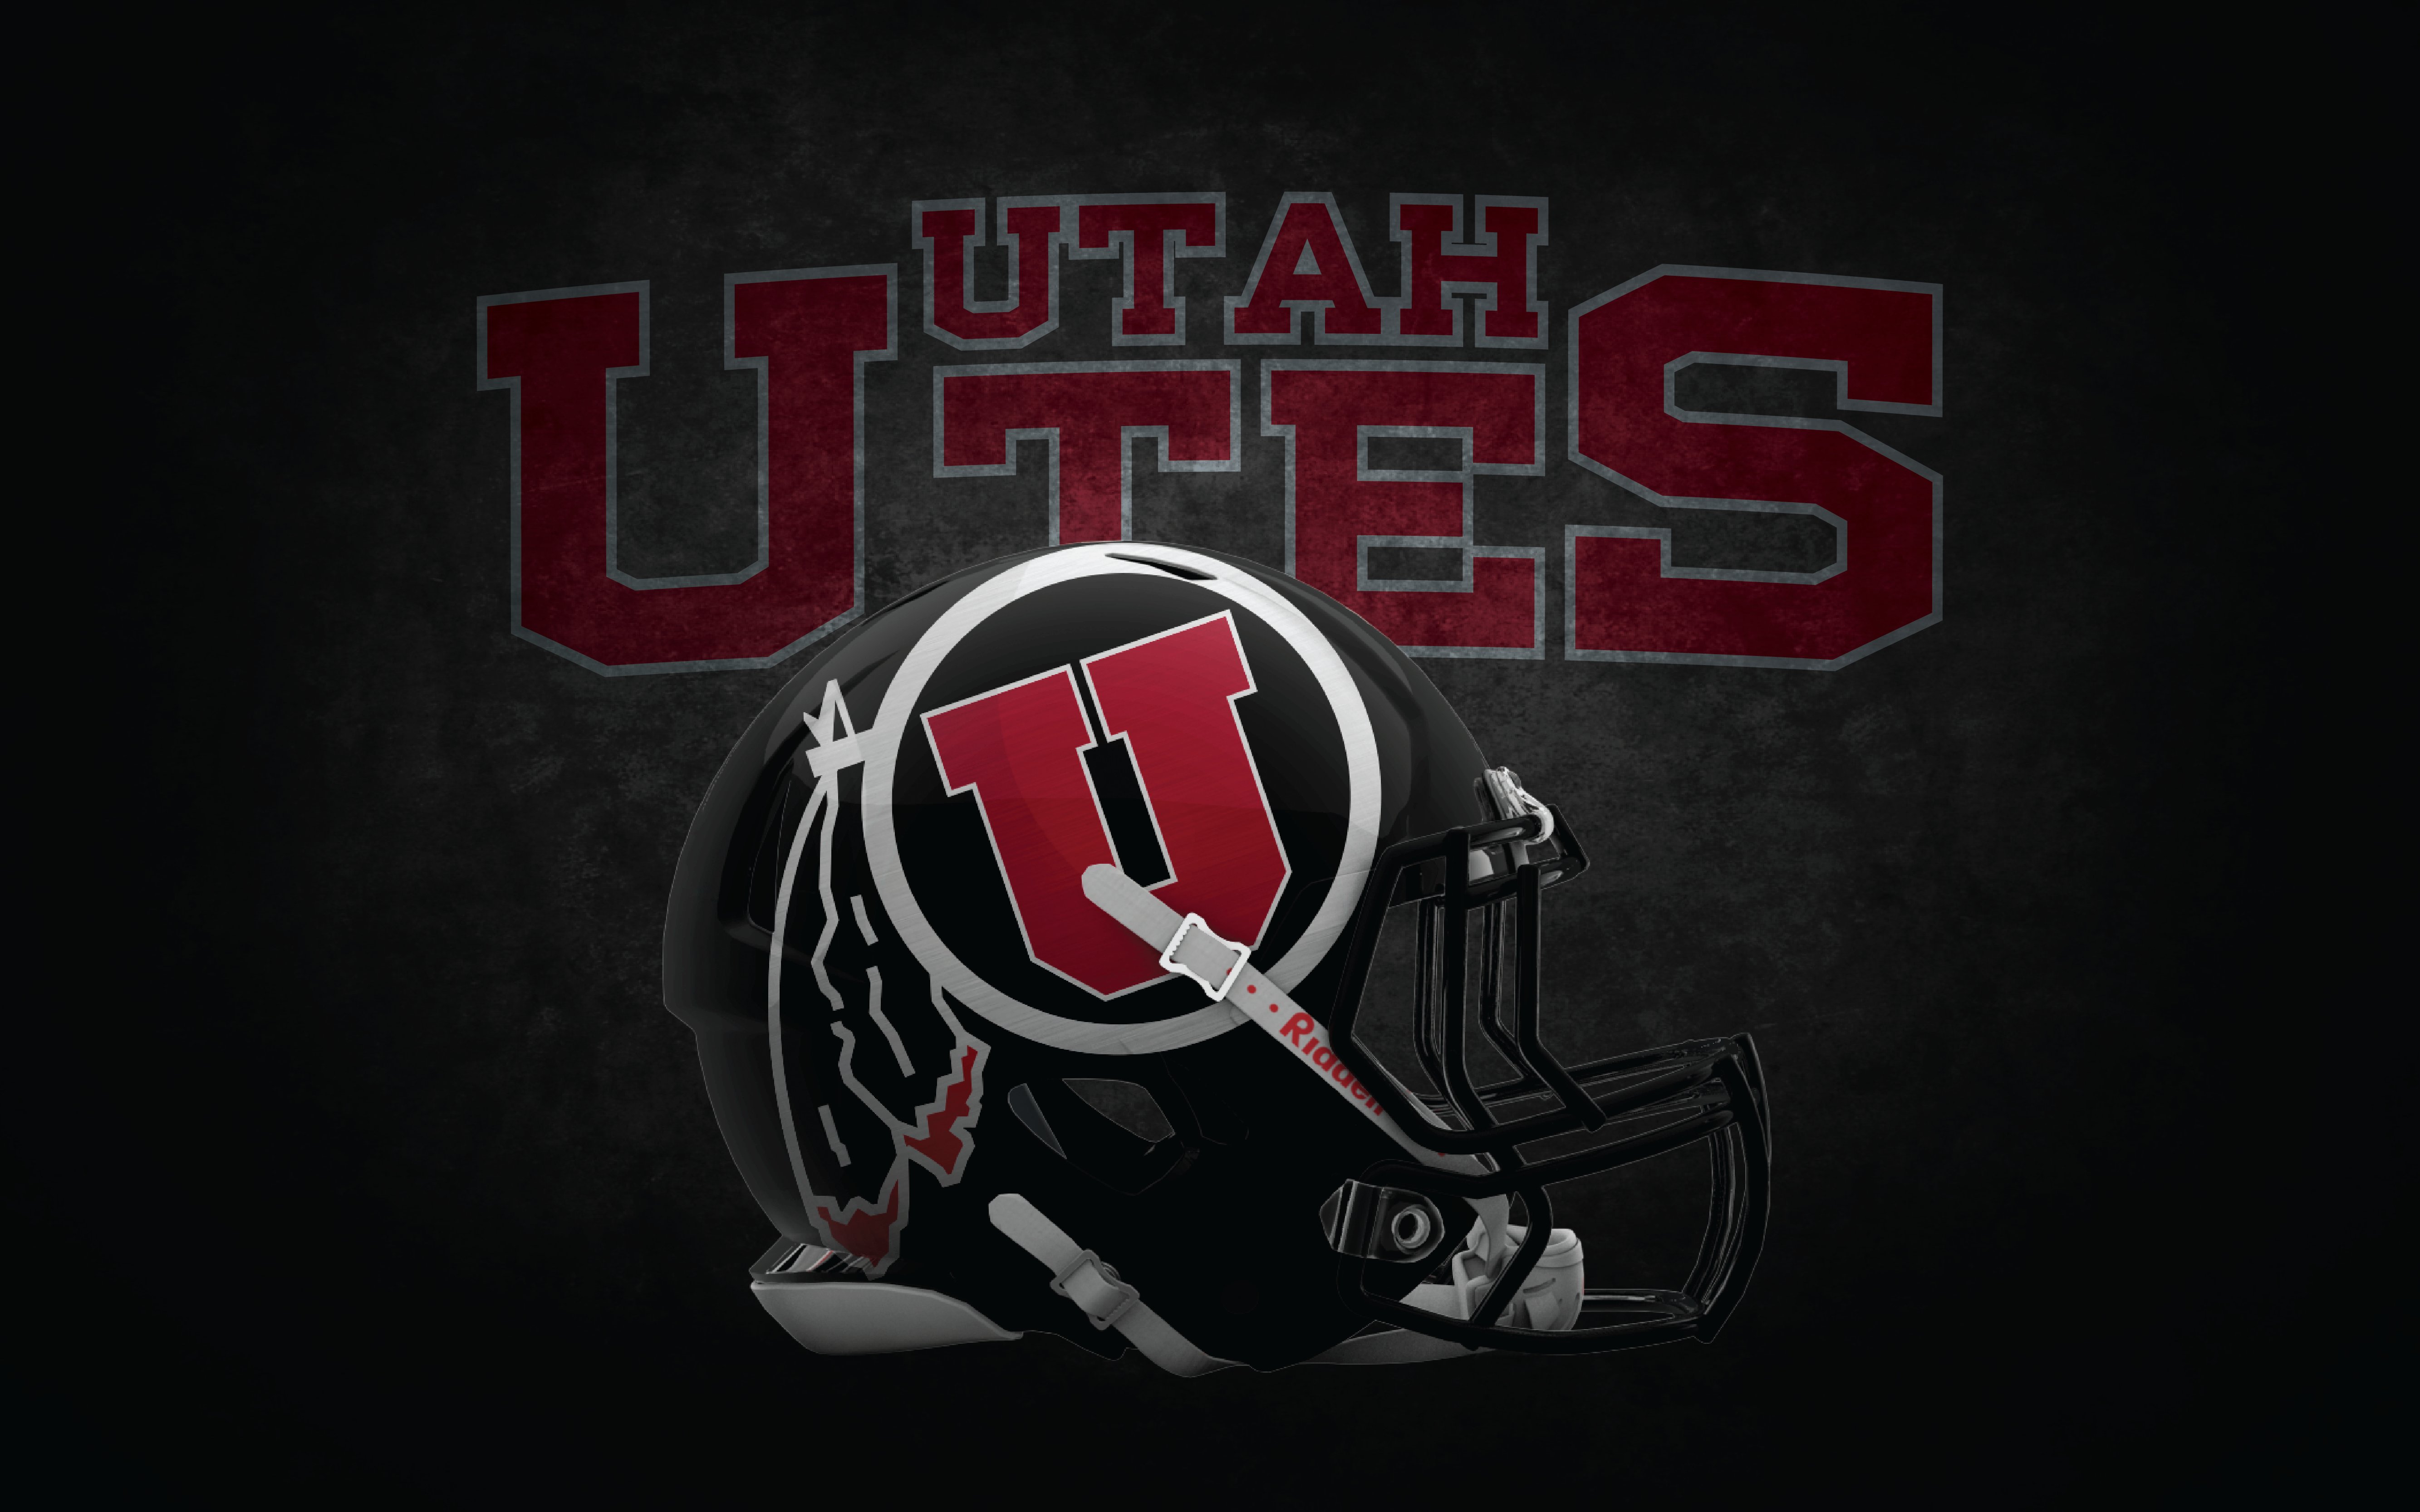 [48+] University of Utah Football Wallpaper